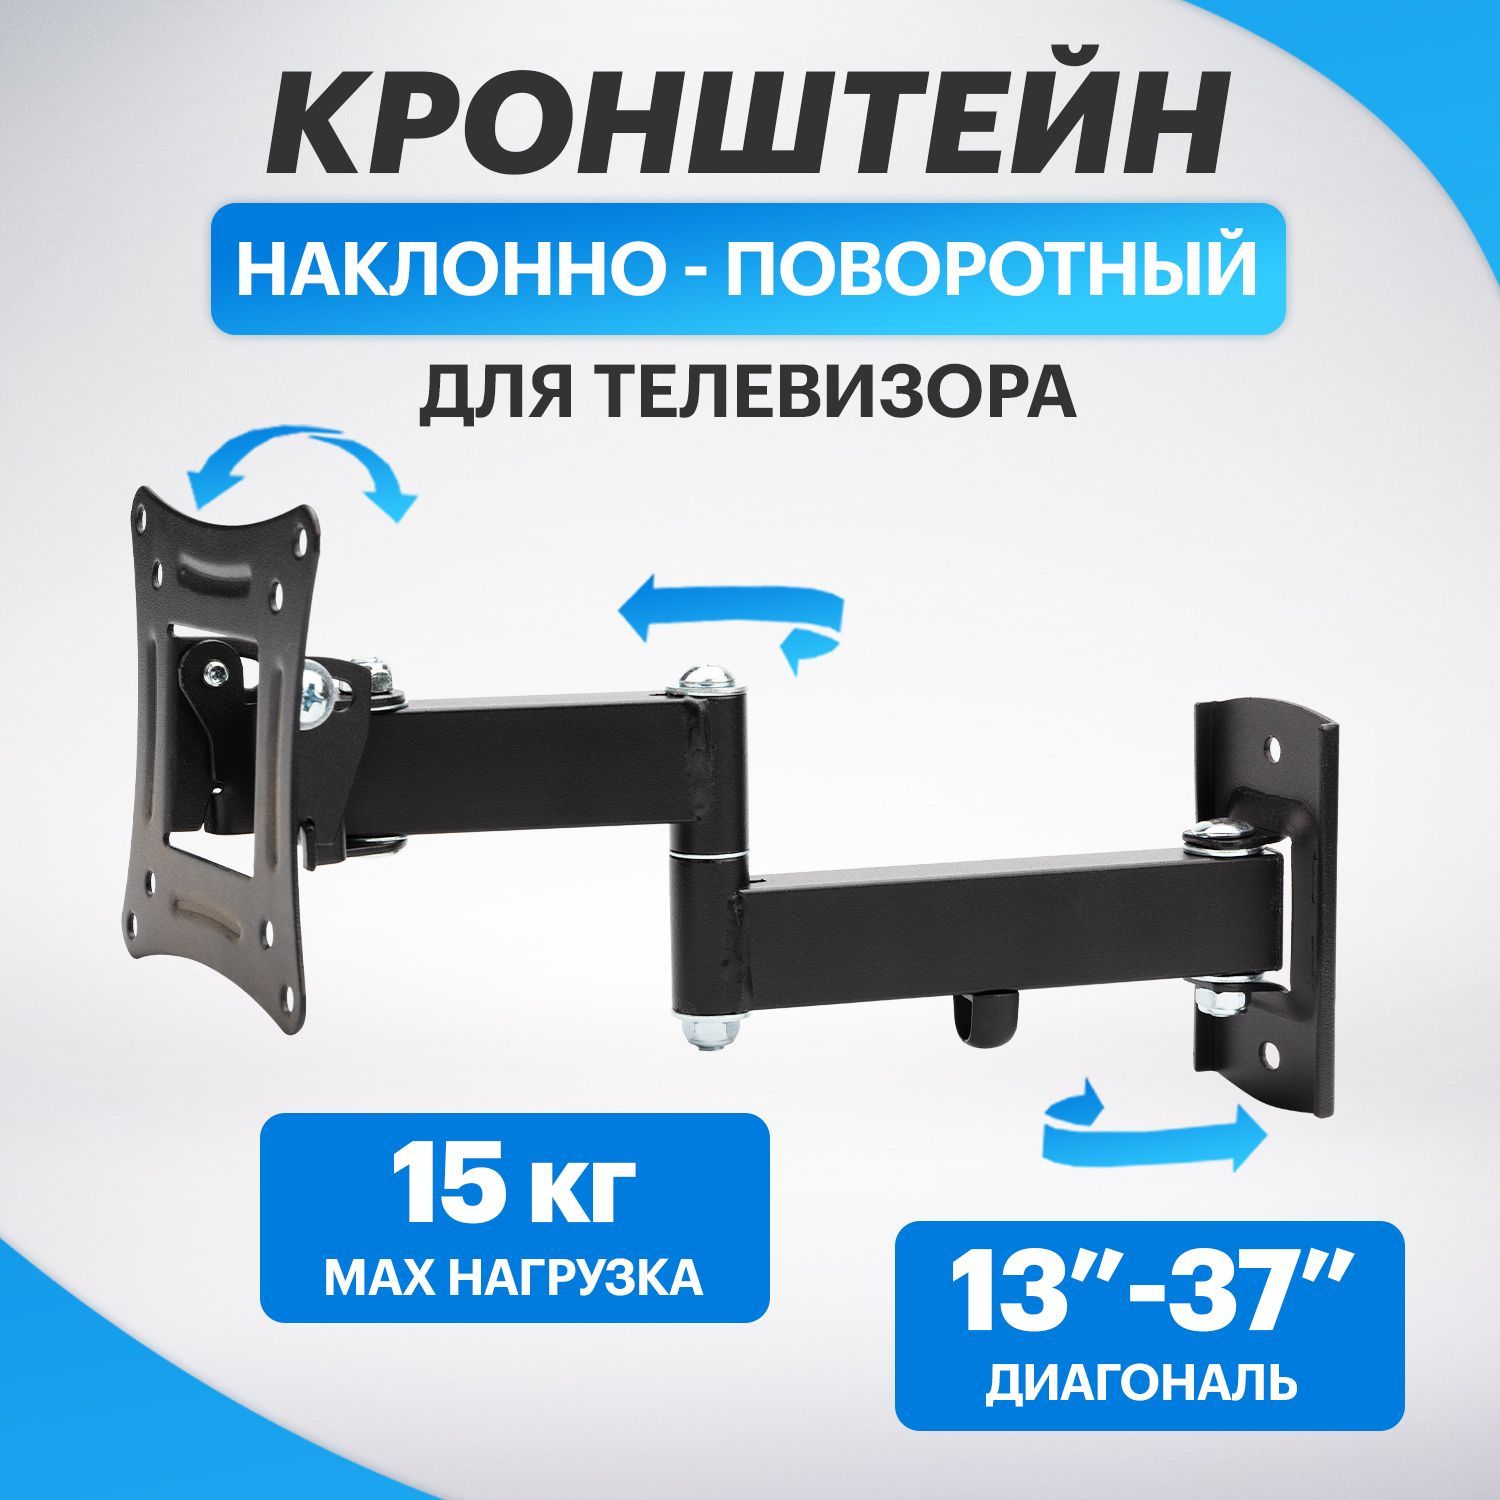 Купить кронштейн для телевизора - лучшая цена в centerforstrategy.ru